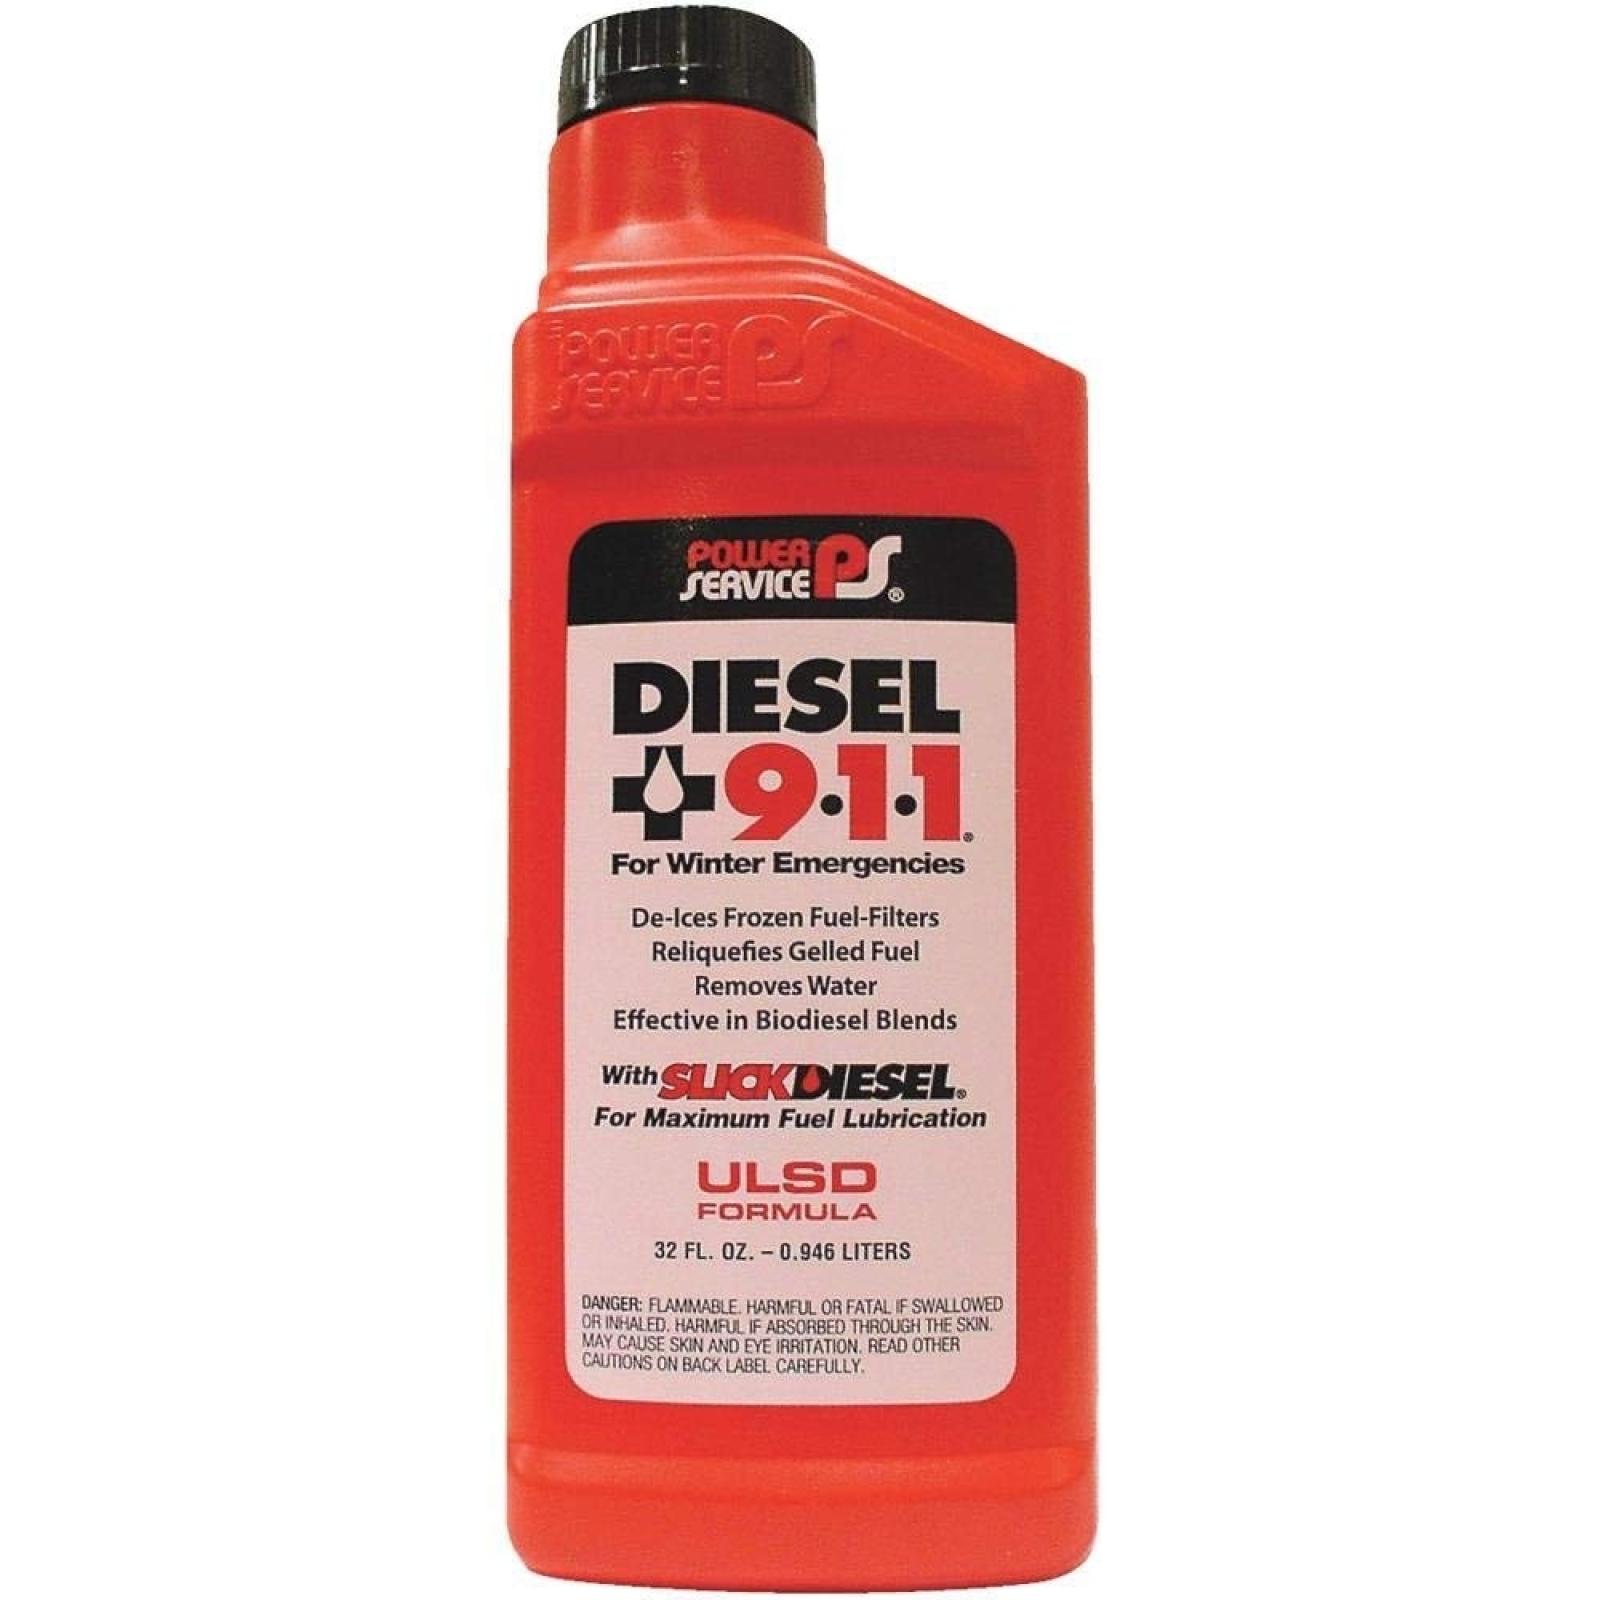 Diesel Fuel Supplement 911